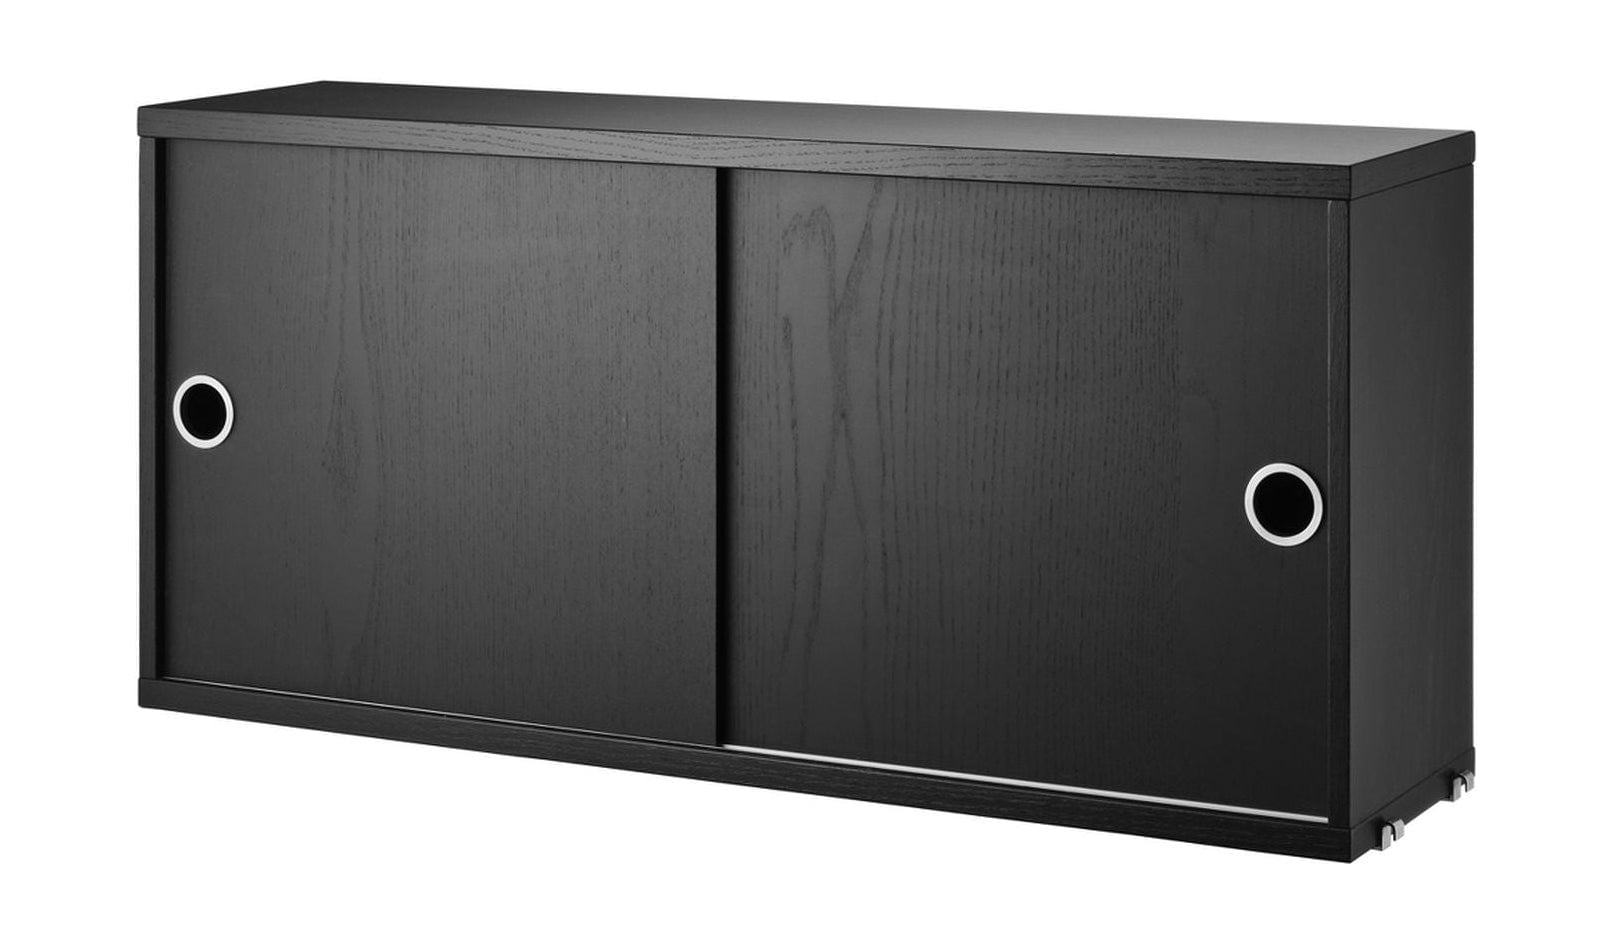 Kabinettelement des String Möbel String System mit Schiebetüren schwarz gefärbte Asche, 20x78x37 cm